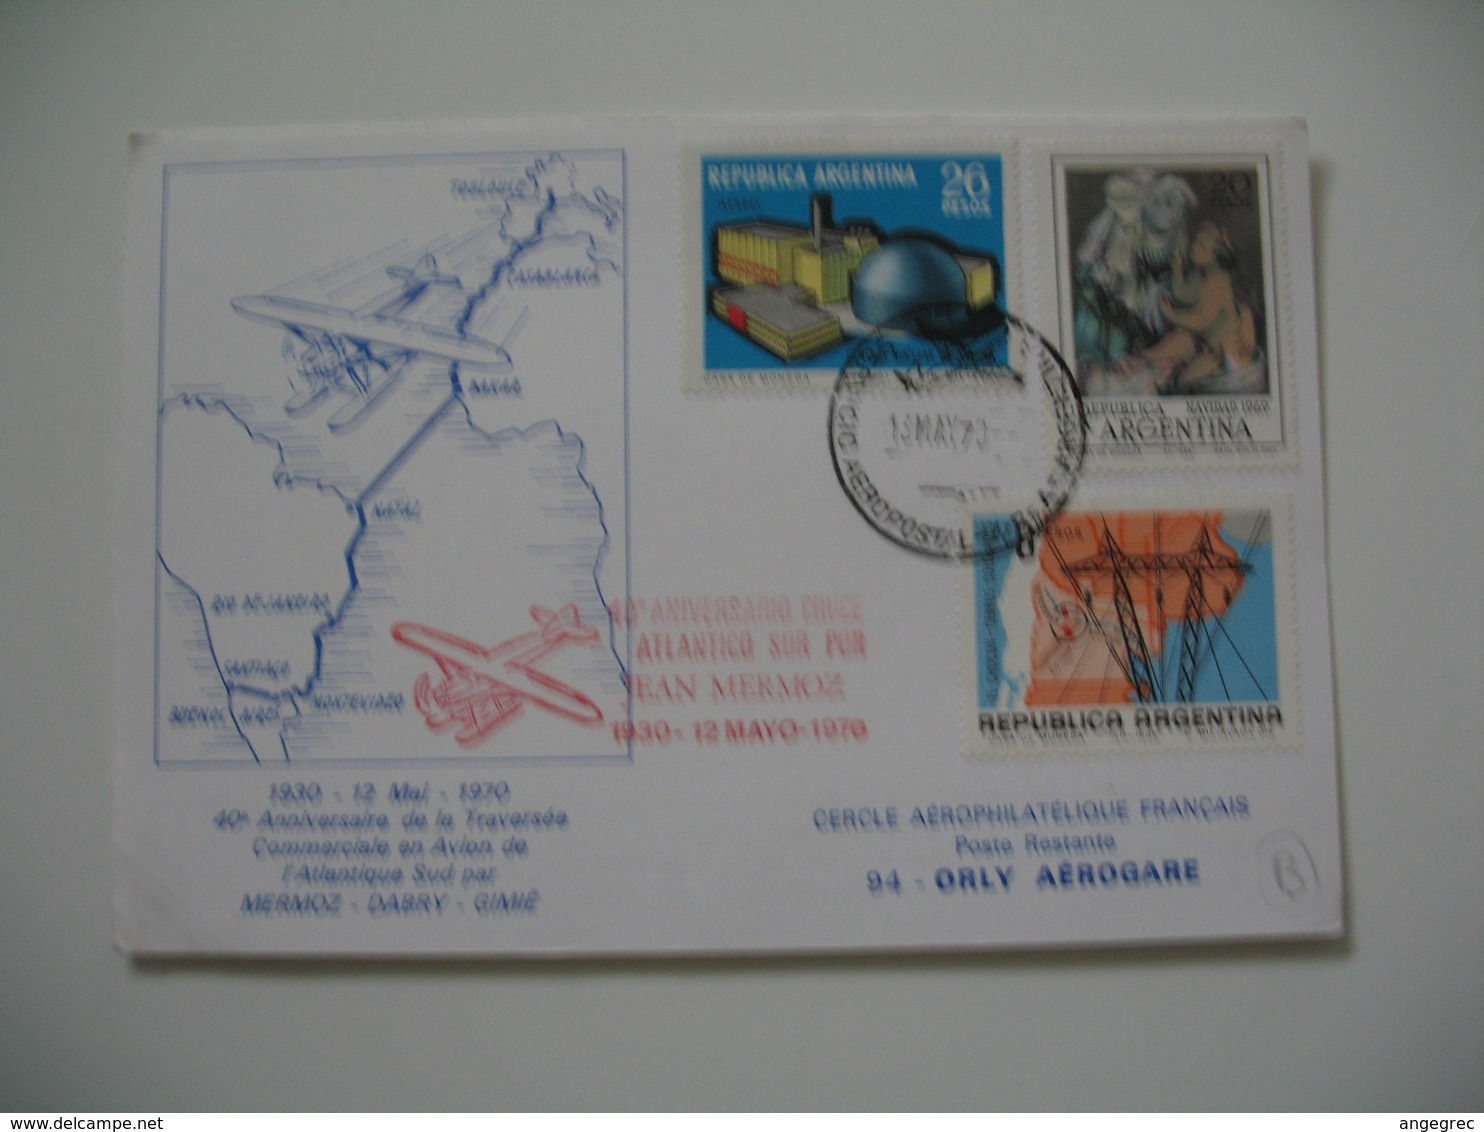 Enveloppe  Argentine  1970 - 40 éme Anniversaire De La Traversée Commerciale En Avion De L'Atlantique Sud Par Mermoz - - Storia Postale